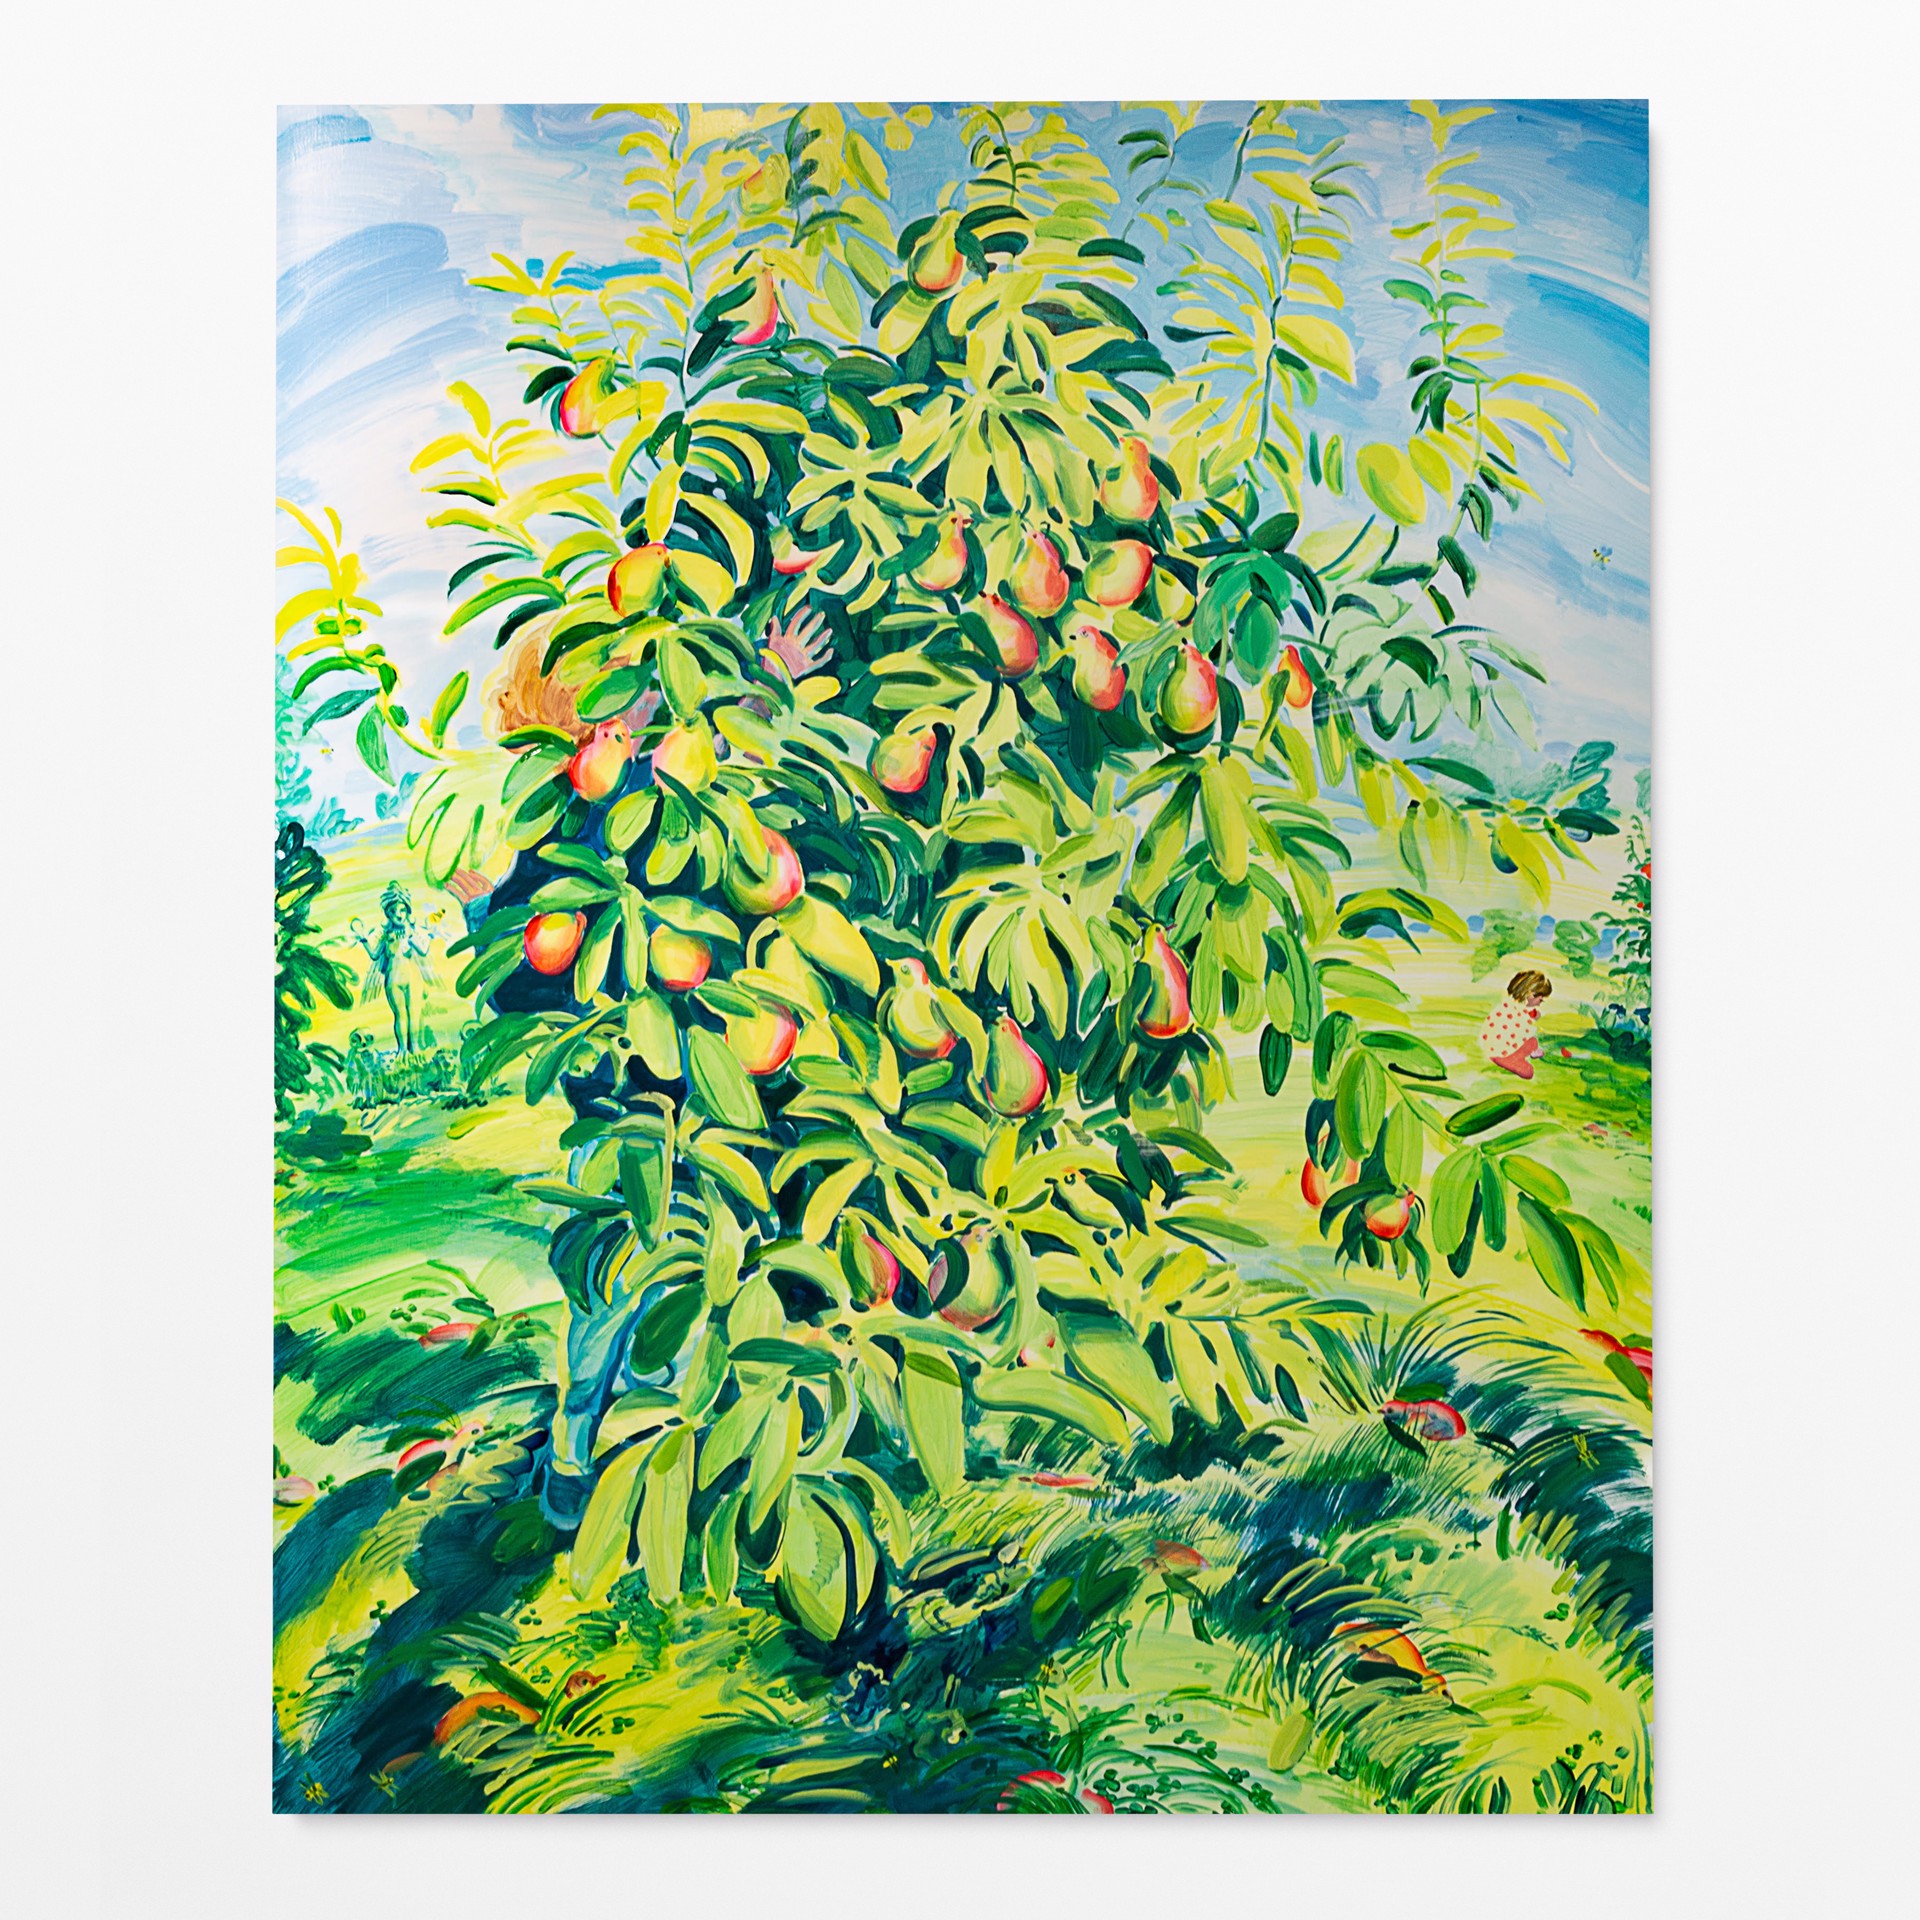 Eve Ishtar under the Flamango Tree by Hilary Doyle